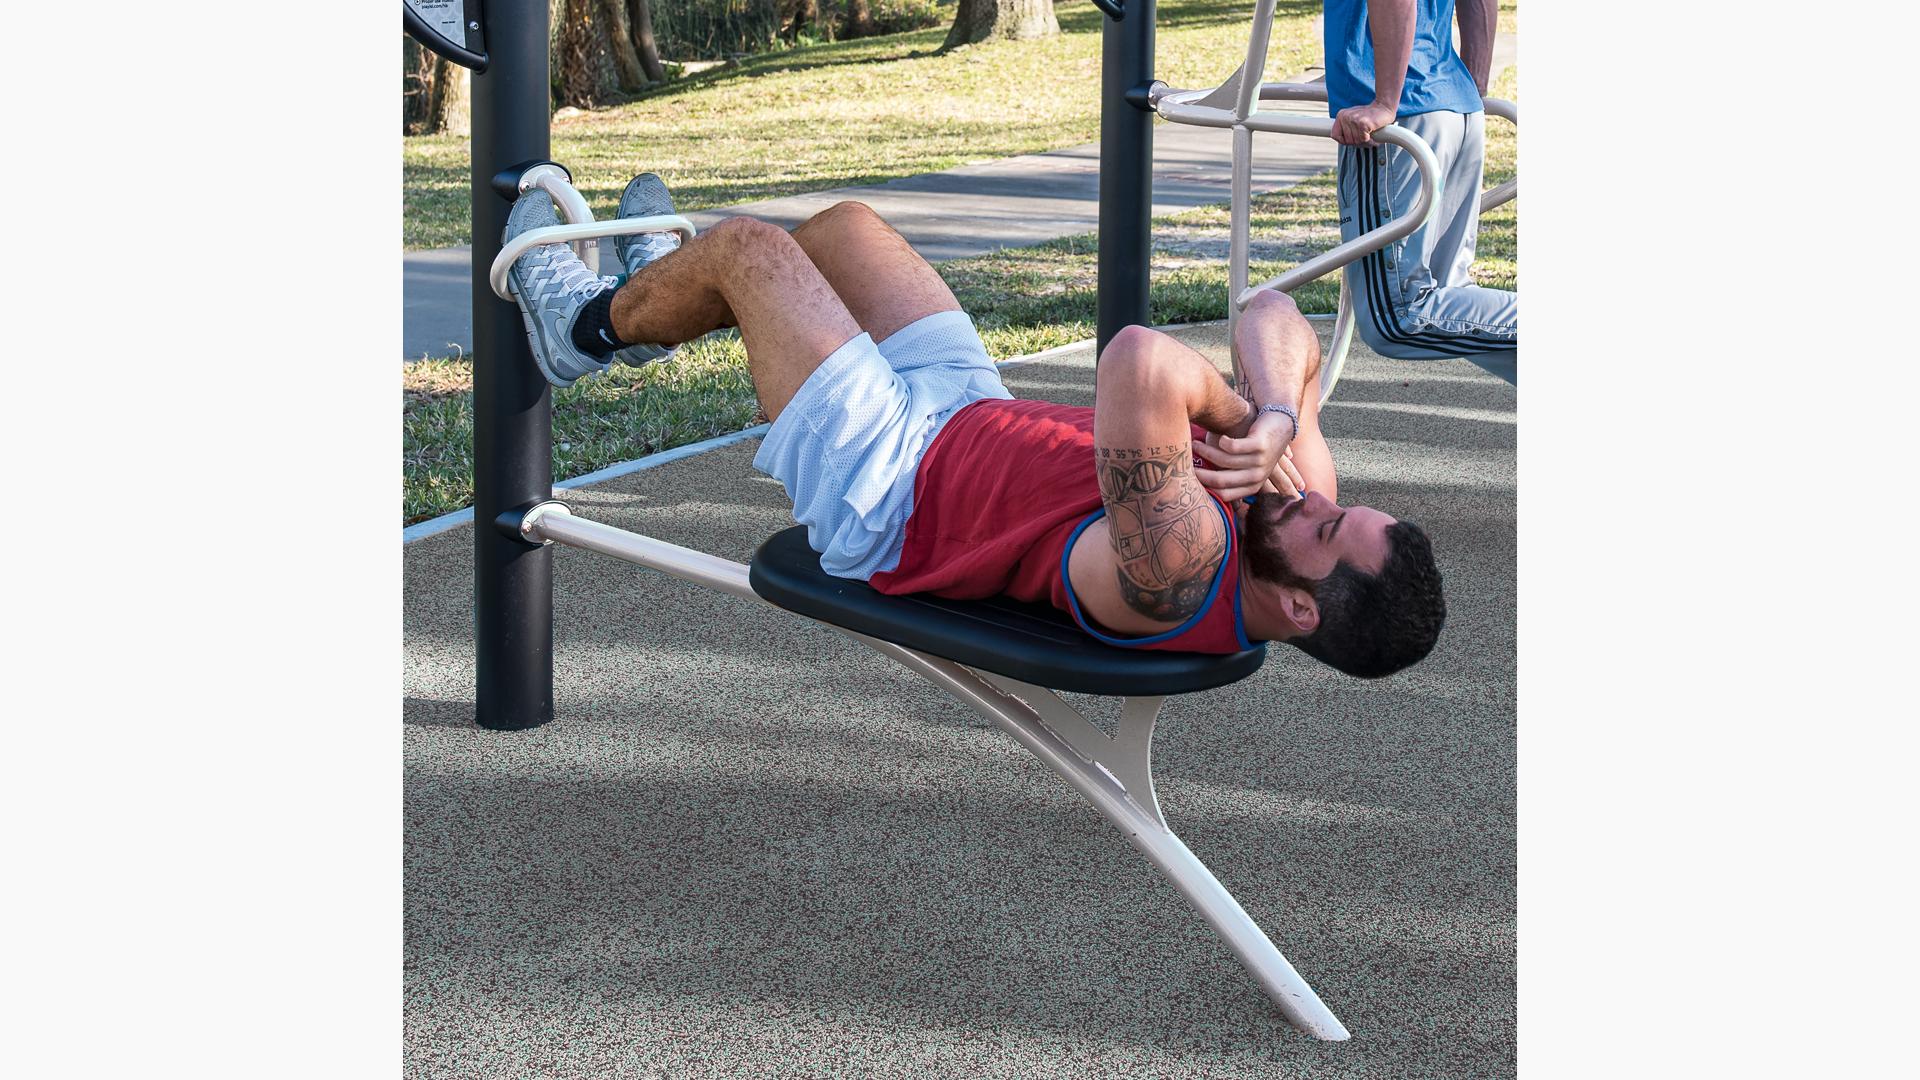 HealthBeat® Ab Crunch/Leg Lift - Outdoor Fitness Equipment